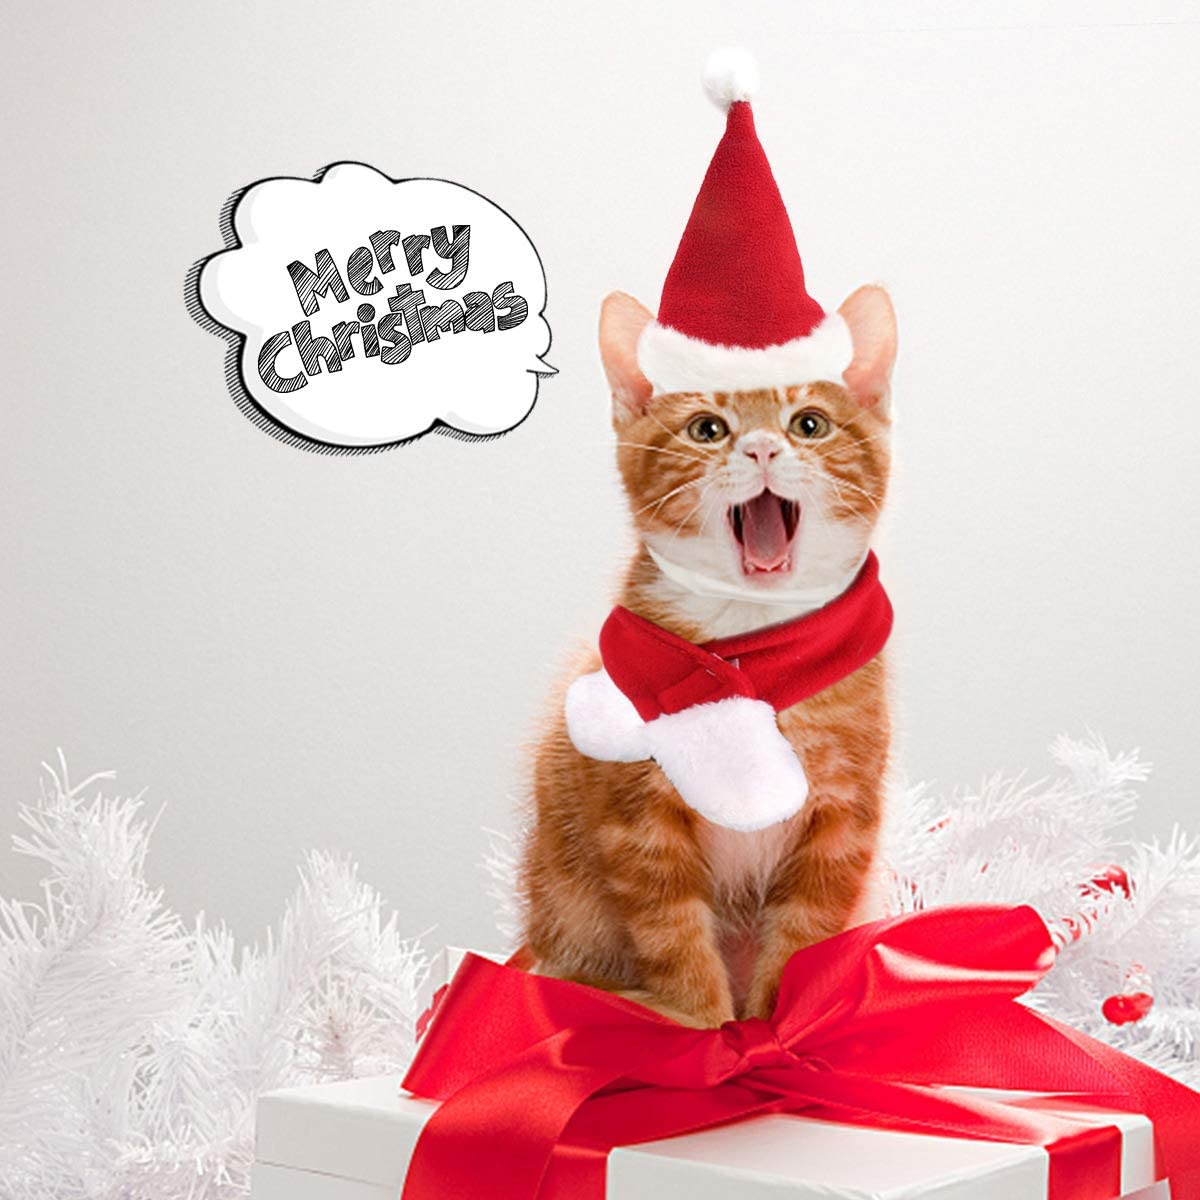  Perro Gato Mascotas Sombrero de Santa – Navidad Disfraz Silenciador Cosplay Disfraces Ropa de Perro Invierno para Cachorros Gatitos pequeños Gatos Perros Mascotas liebens Valor y cálido Rojo y Blanco 